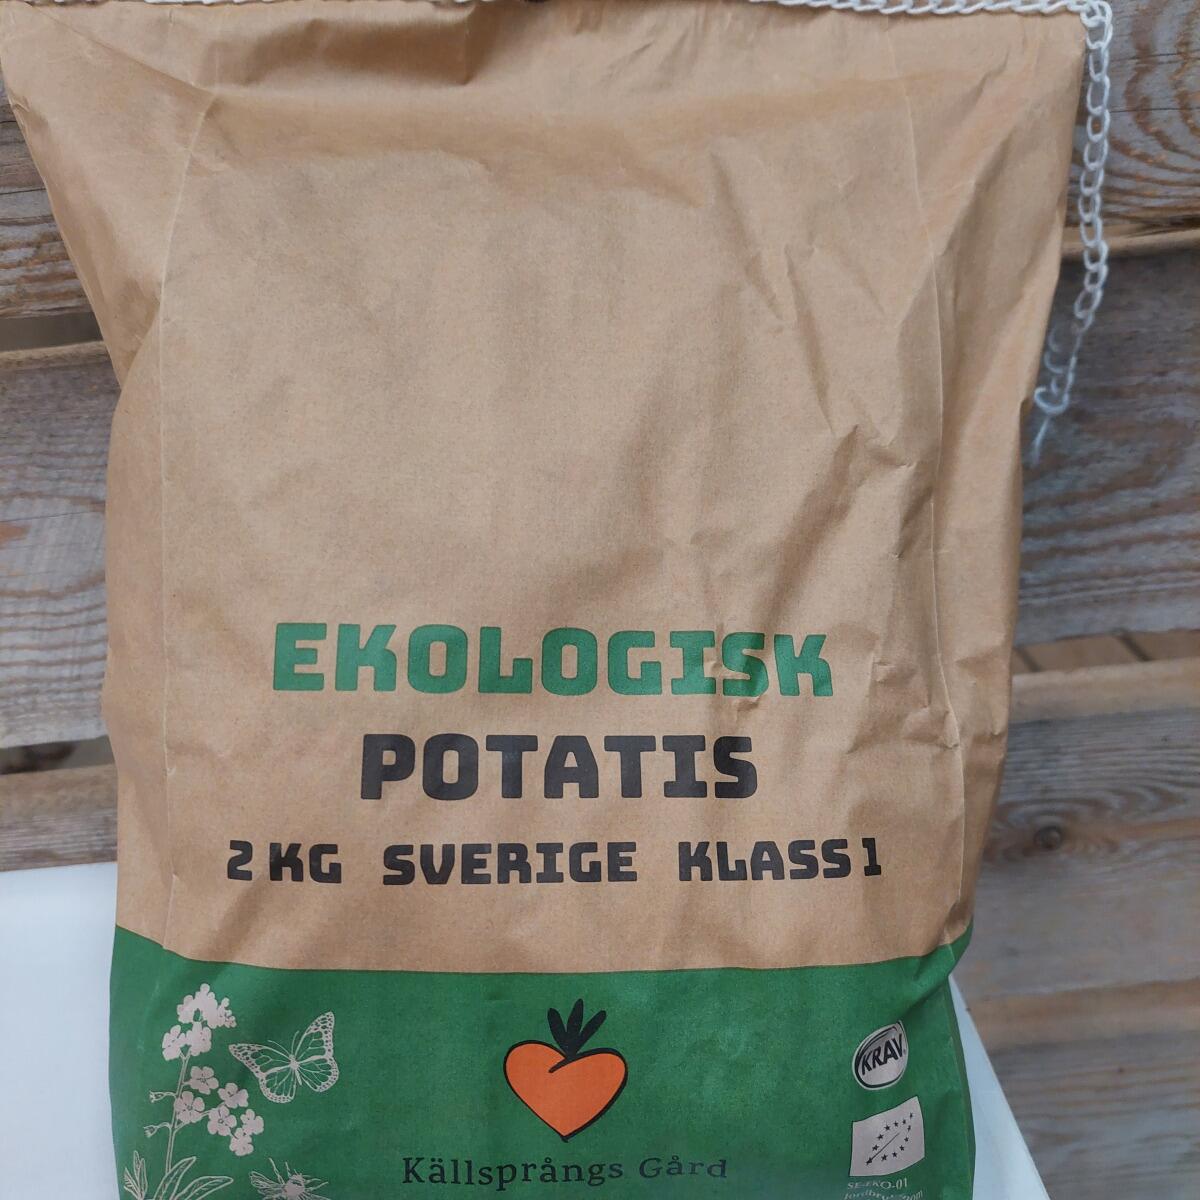 Källsprångs Gård's Potatoes 2 kg'